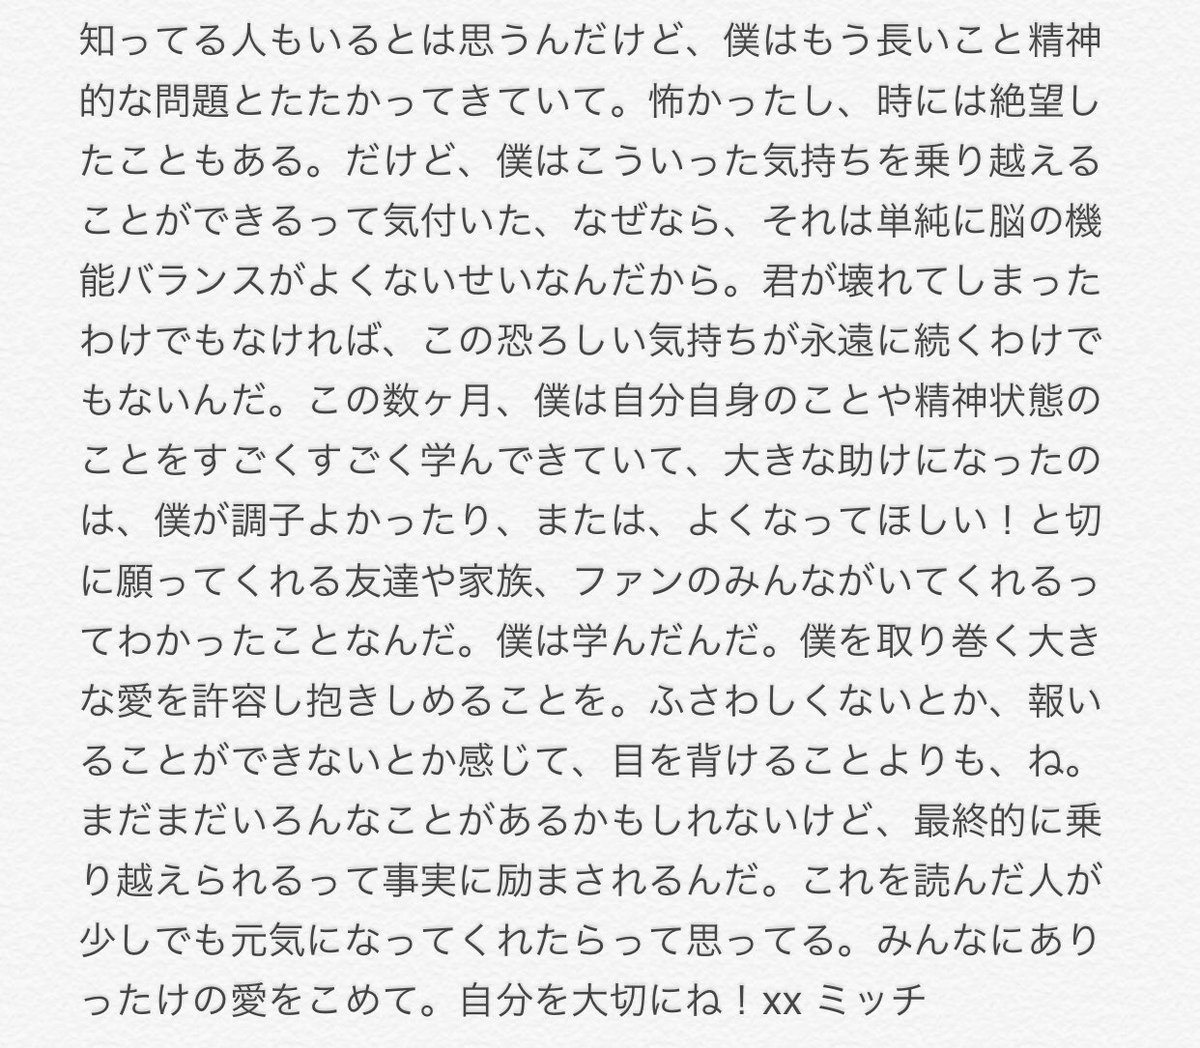 Pentatonix 日本公式 ペンタトニックス ミッチのツイート 10 10の世界メンタルヘルスデイに際して ミッチが自身の想いを綴っています まっすぐで偽りない気持ちに対して この後メンバーが応えていく様子に メンバーの絆を感じました